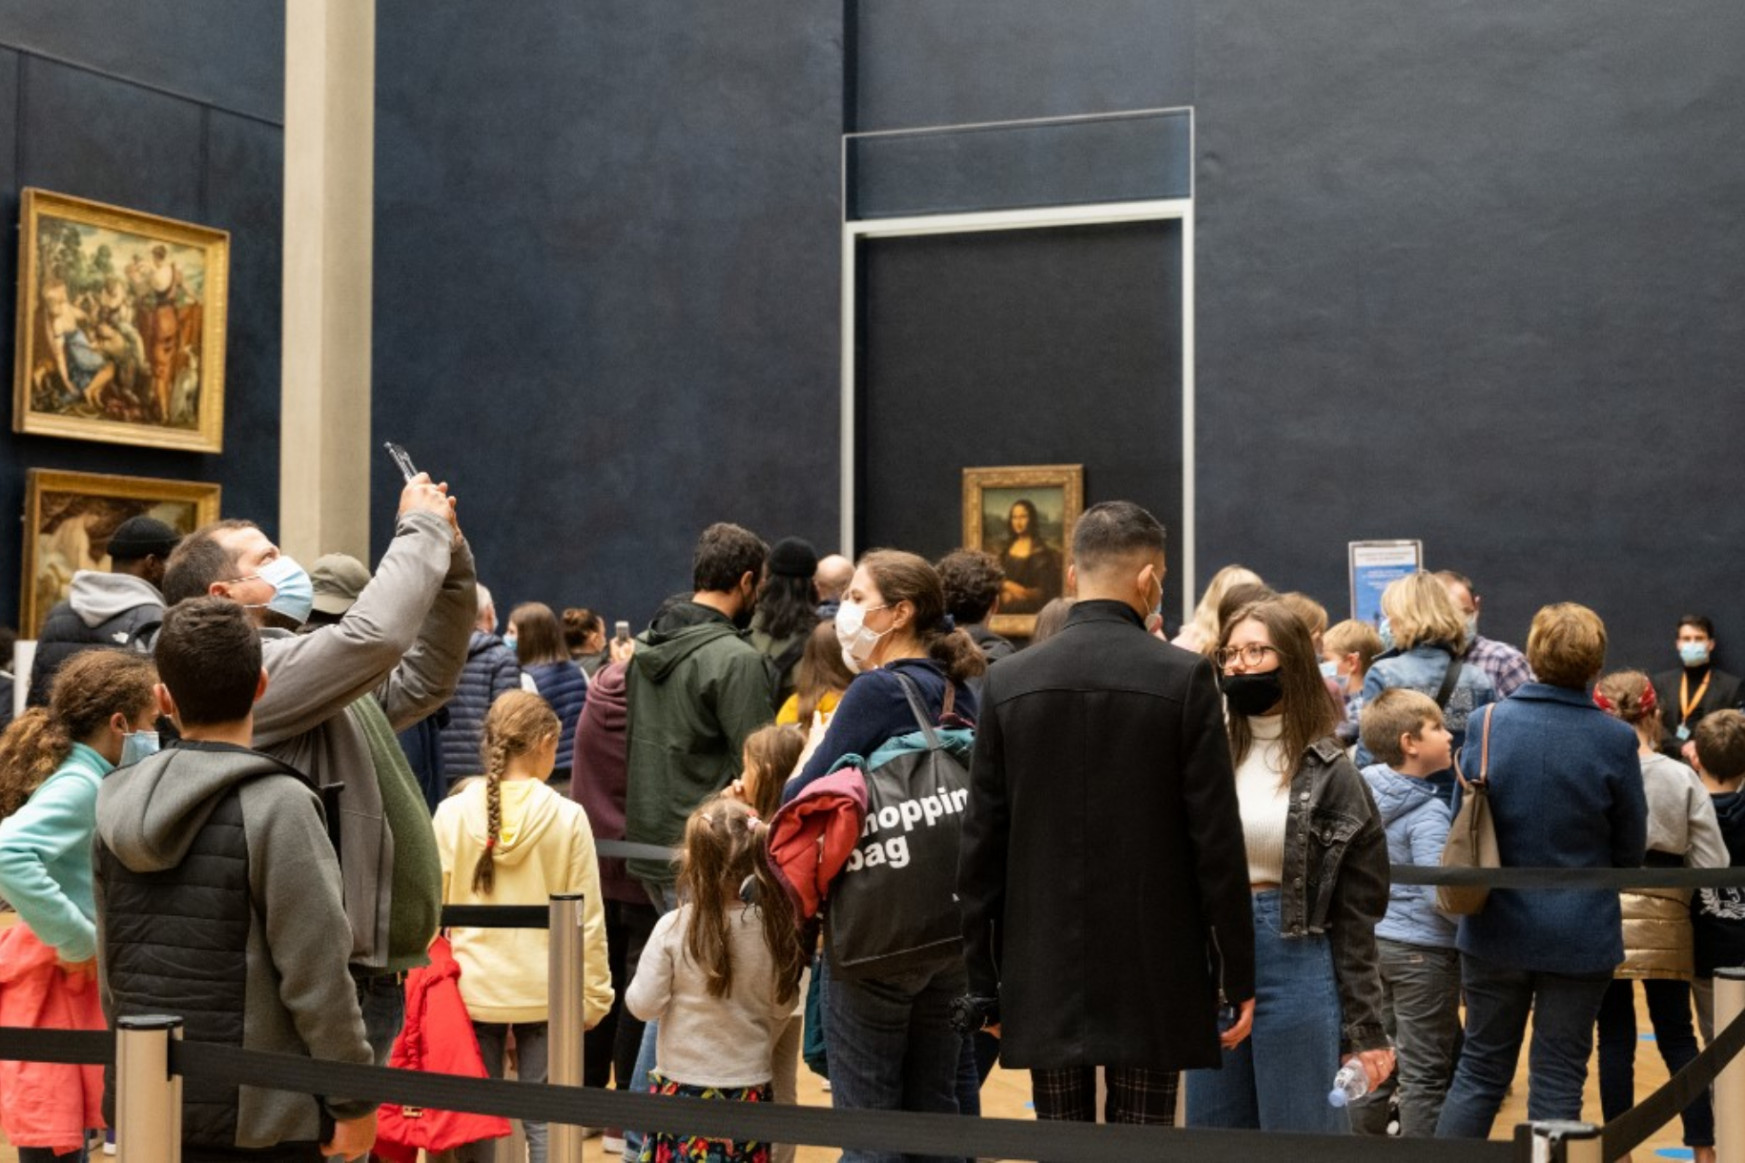 Valakinek megért 28,4 millió forintot, hogy a védőüveg torzítása nélkül nézhesse meg a Mona Lisát a Louvre-ban